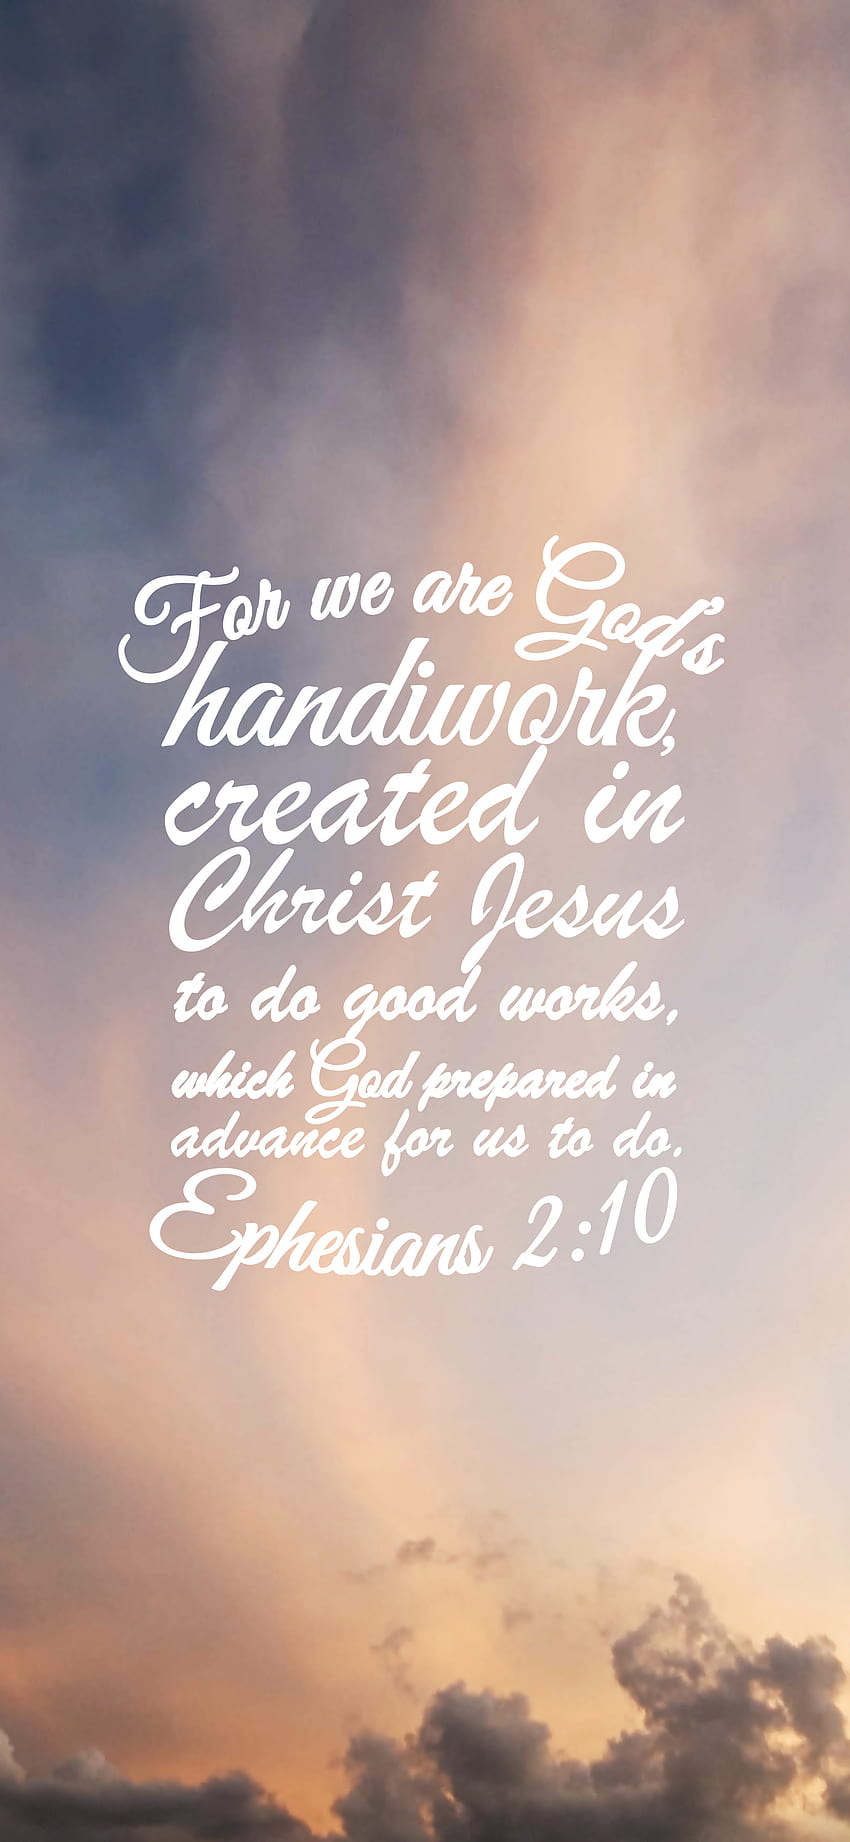 エペソ人への手紙 2:10, イエス, 仕事, クリスチャン, 手仕事, 神, 良い, 創造, 聖書 HD電話の壁紙